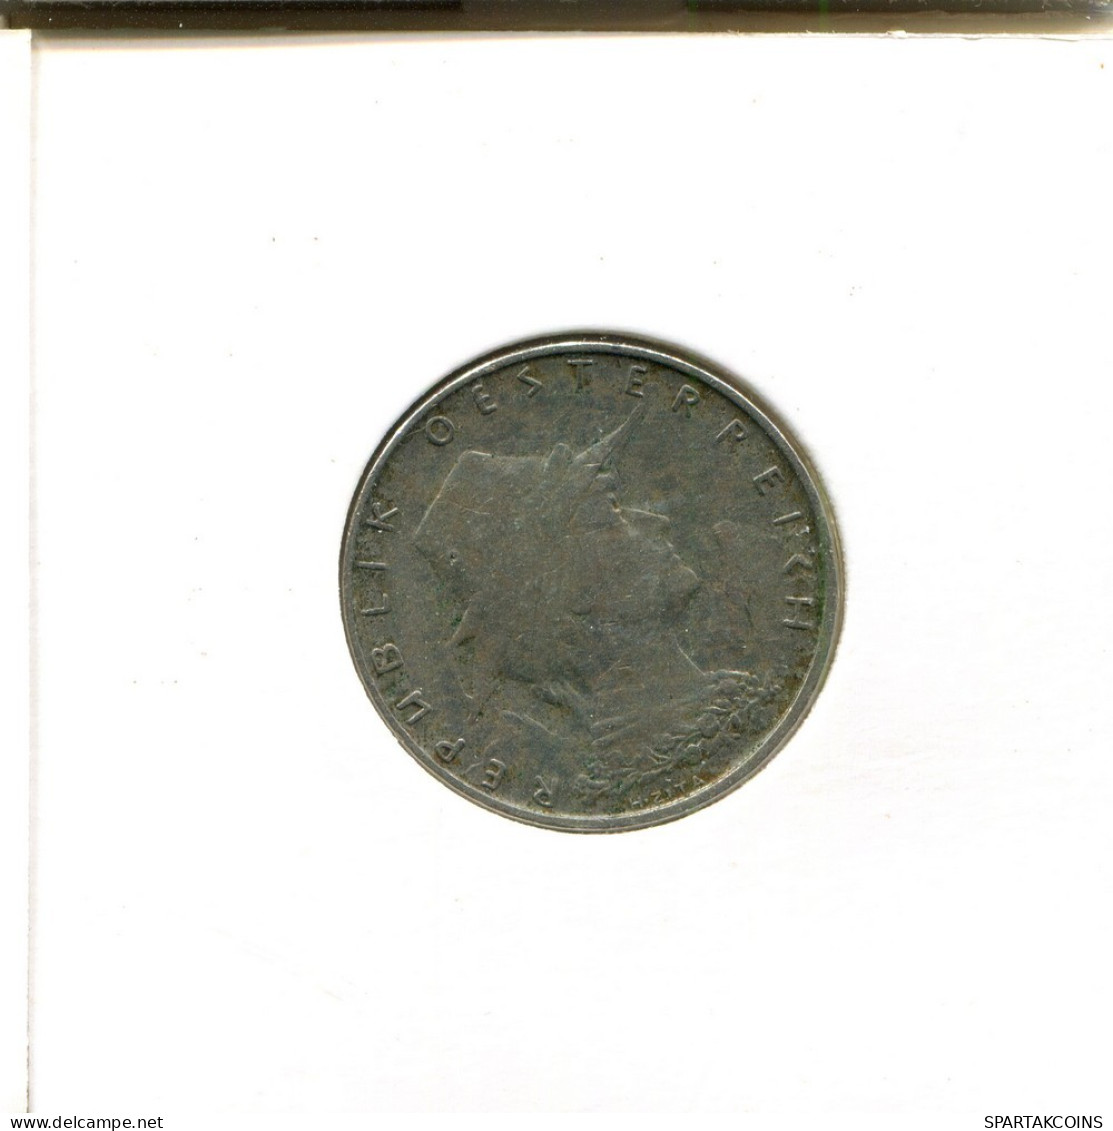 10 GROSCHEN 1928 ÖSTERREICH AUSTRIA Münze #AT528.D.A - Autriche